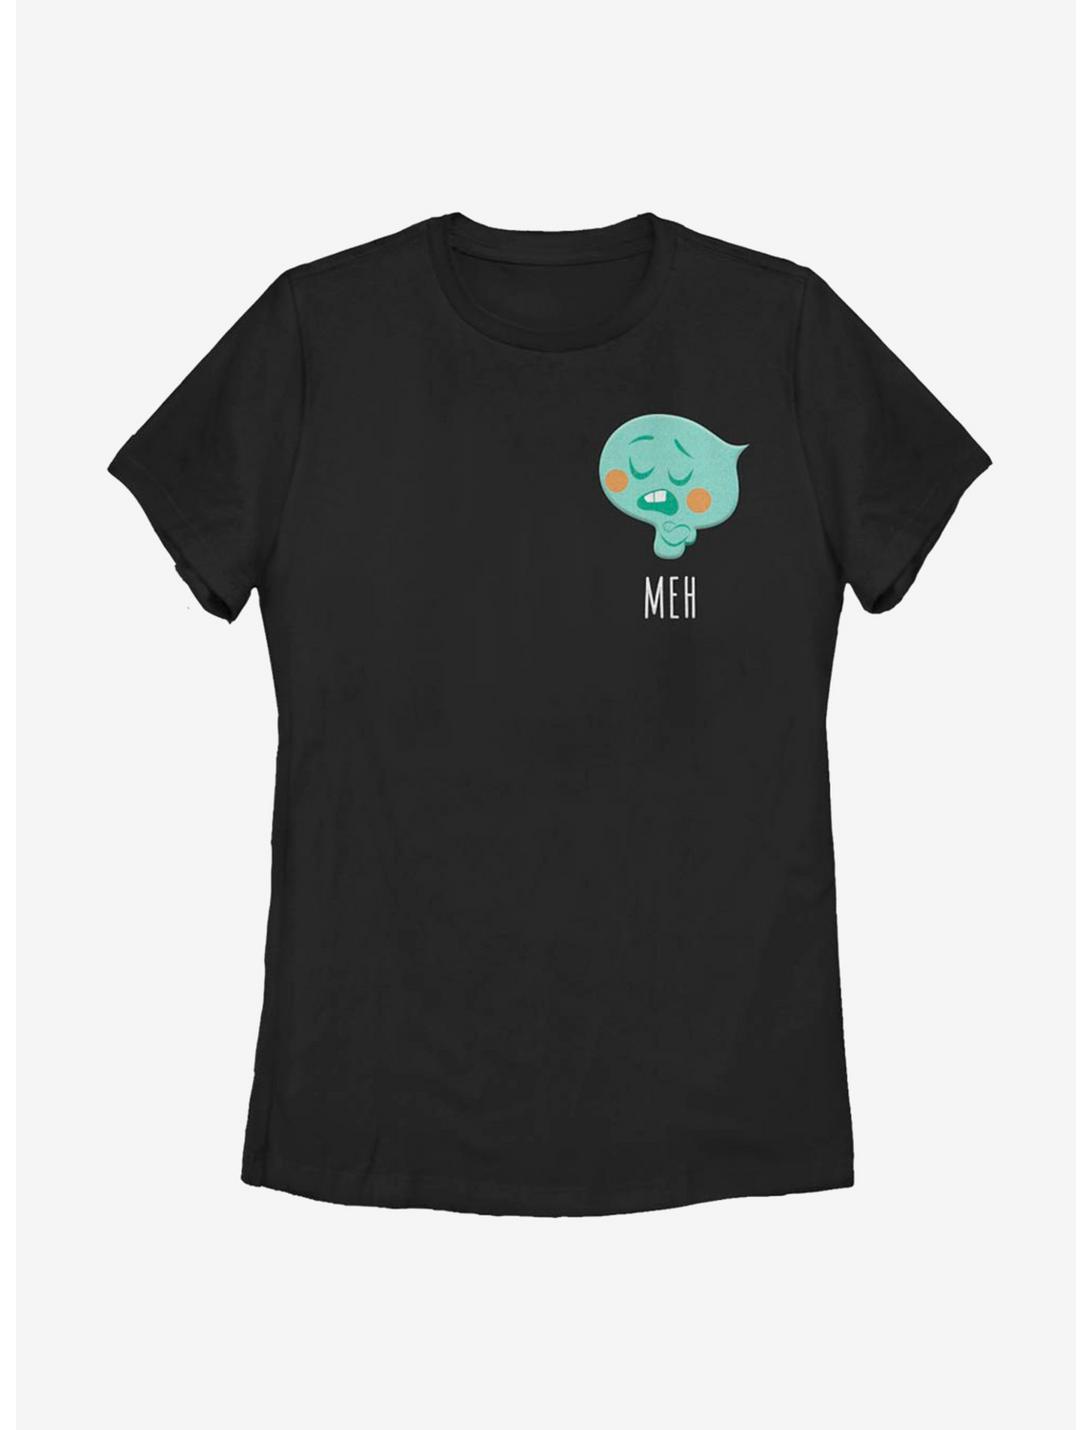 Disney Pixar Soul 22 Meh Womens T-Shirt, BLACK, hi-res